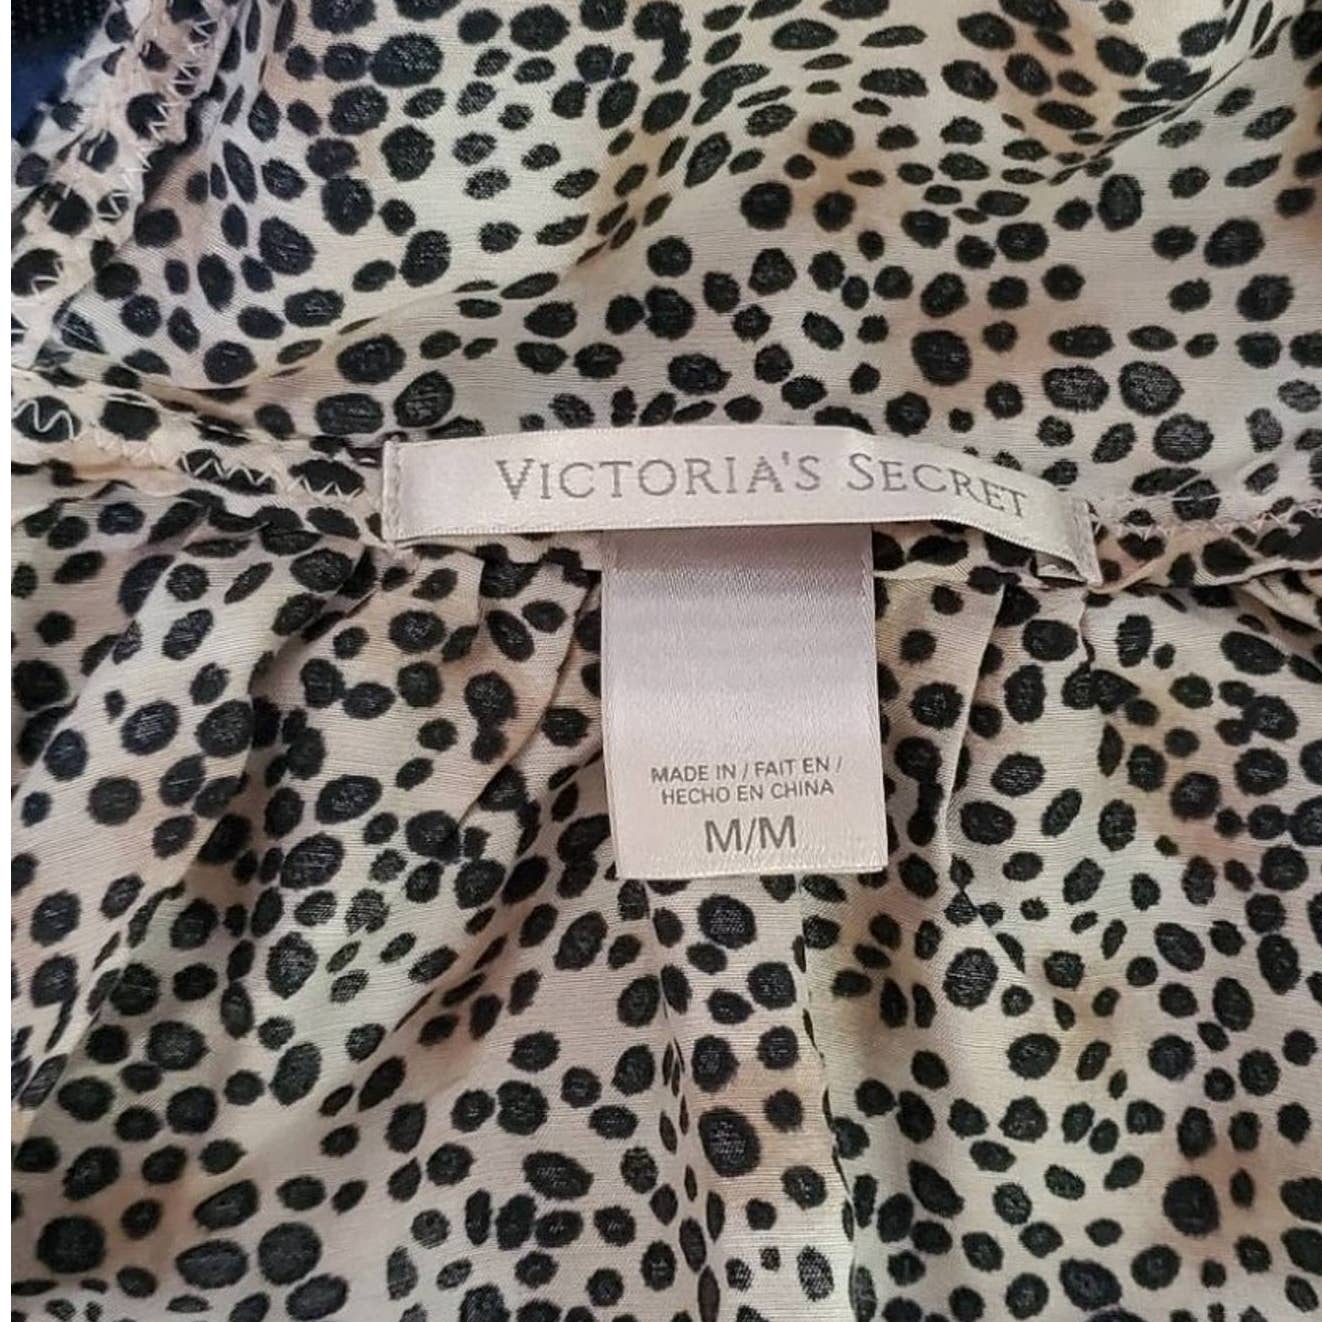 Victoria's Secret Cheetah Leopard Print Tank Top